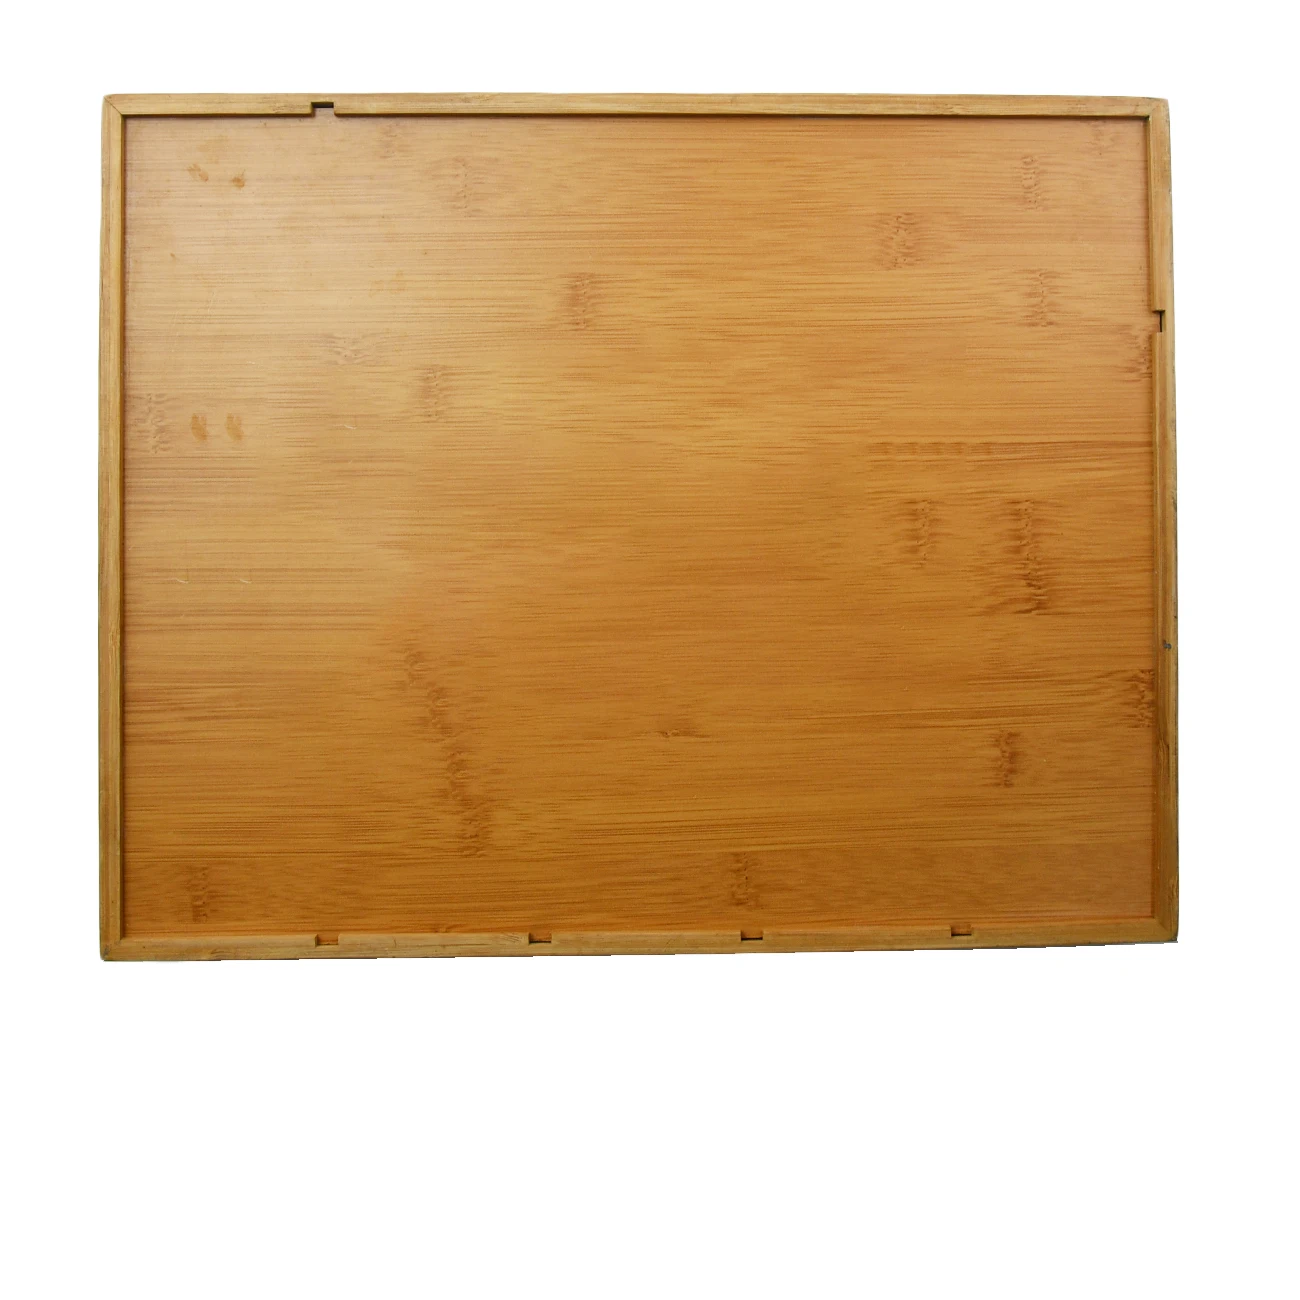 Factory Bamboo Storage Wood  Utensils Drawer Kitchen Accessories Organizer Silverware Holder with Handles